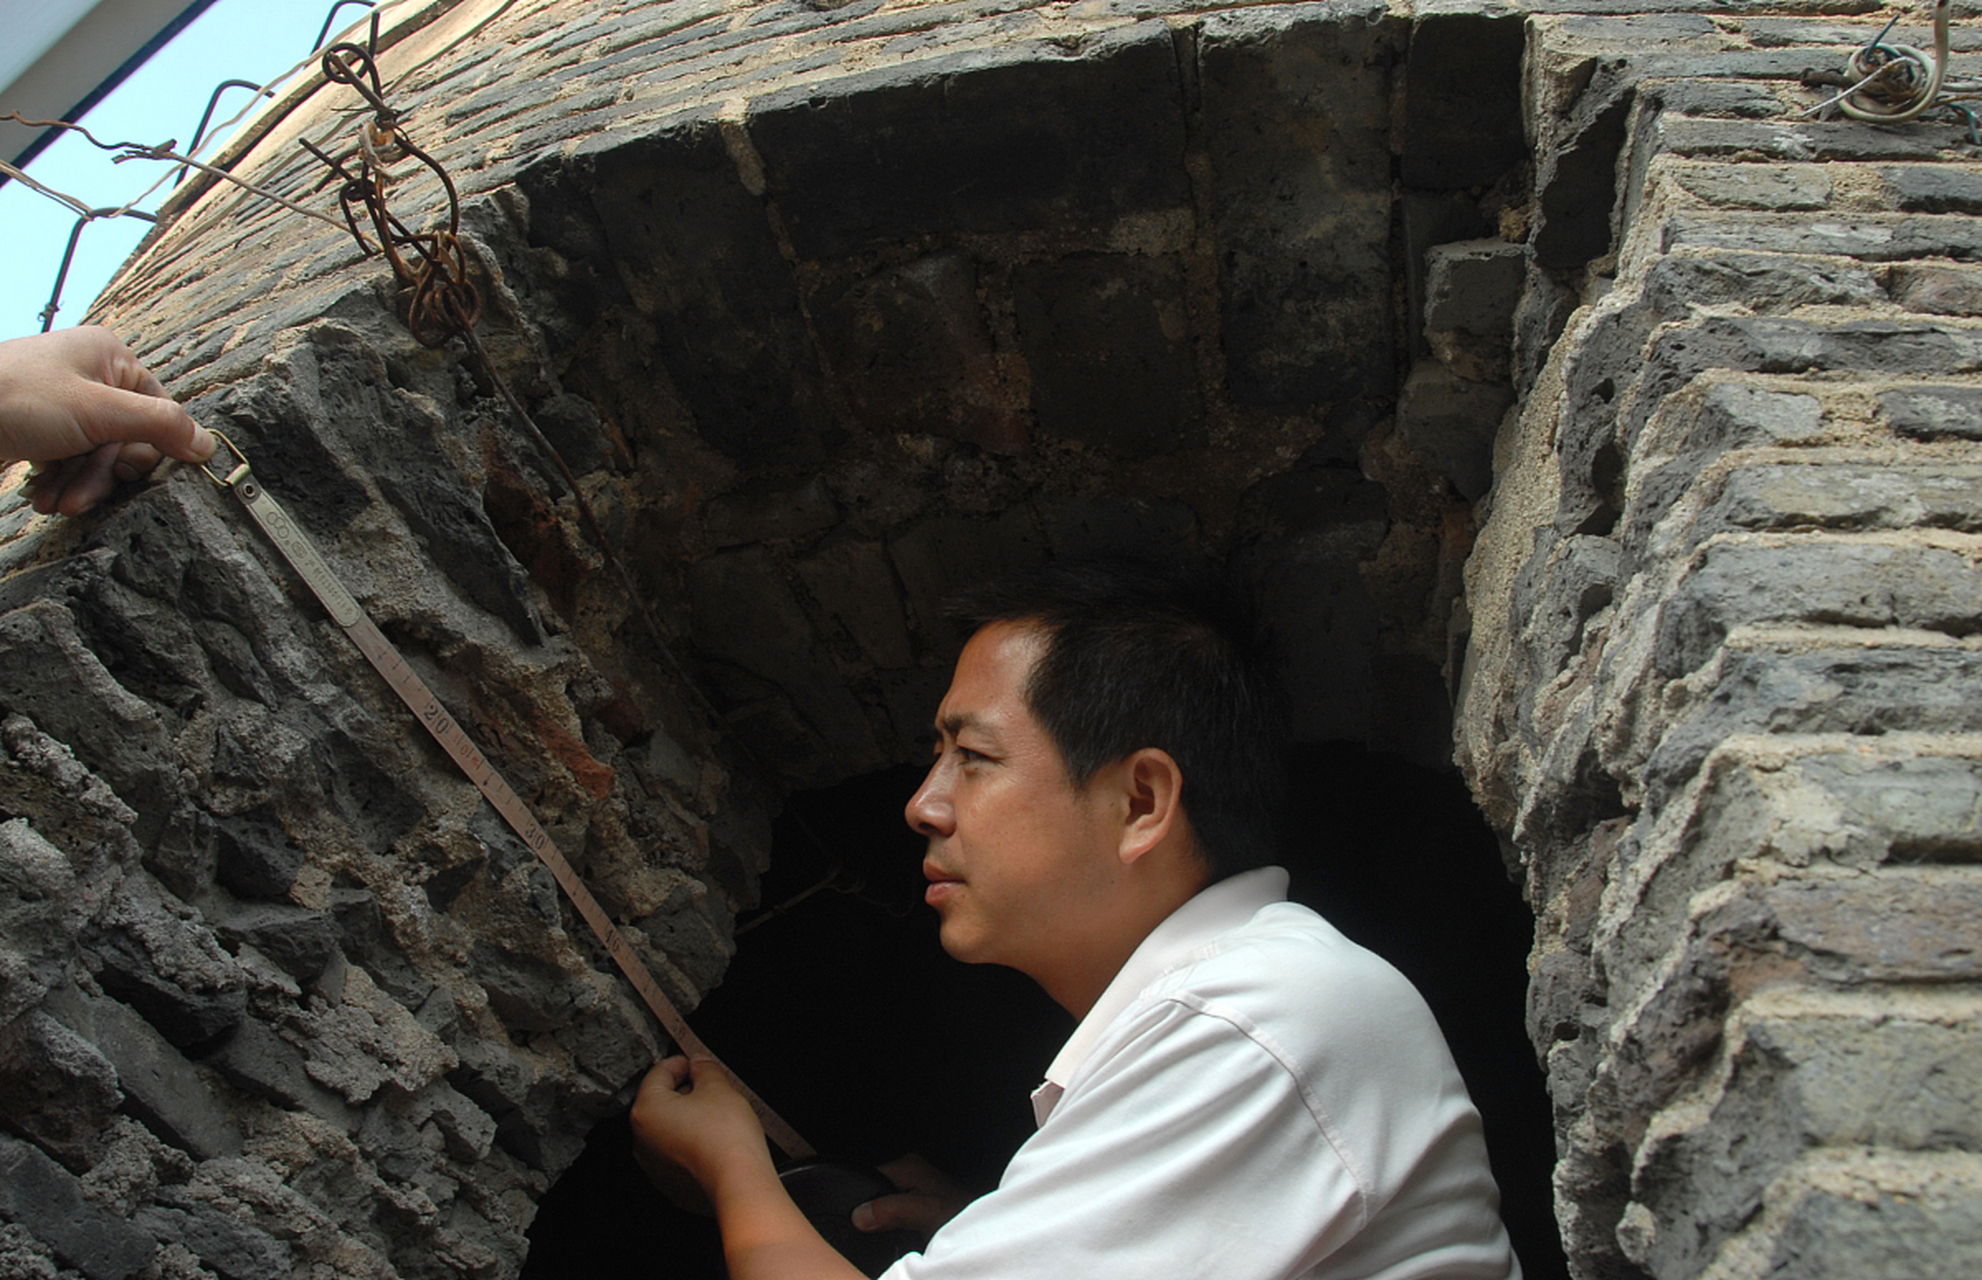 鹤壁集古瓷窑遗址位于河南省鹤壁市区北10公里处,1963年被河南省人民